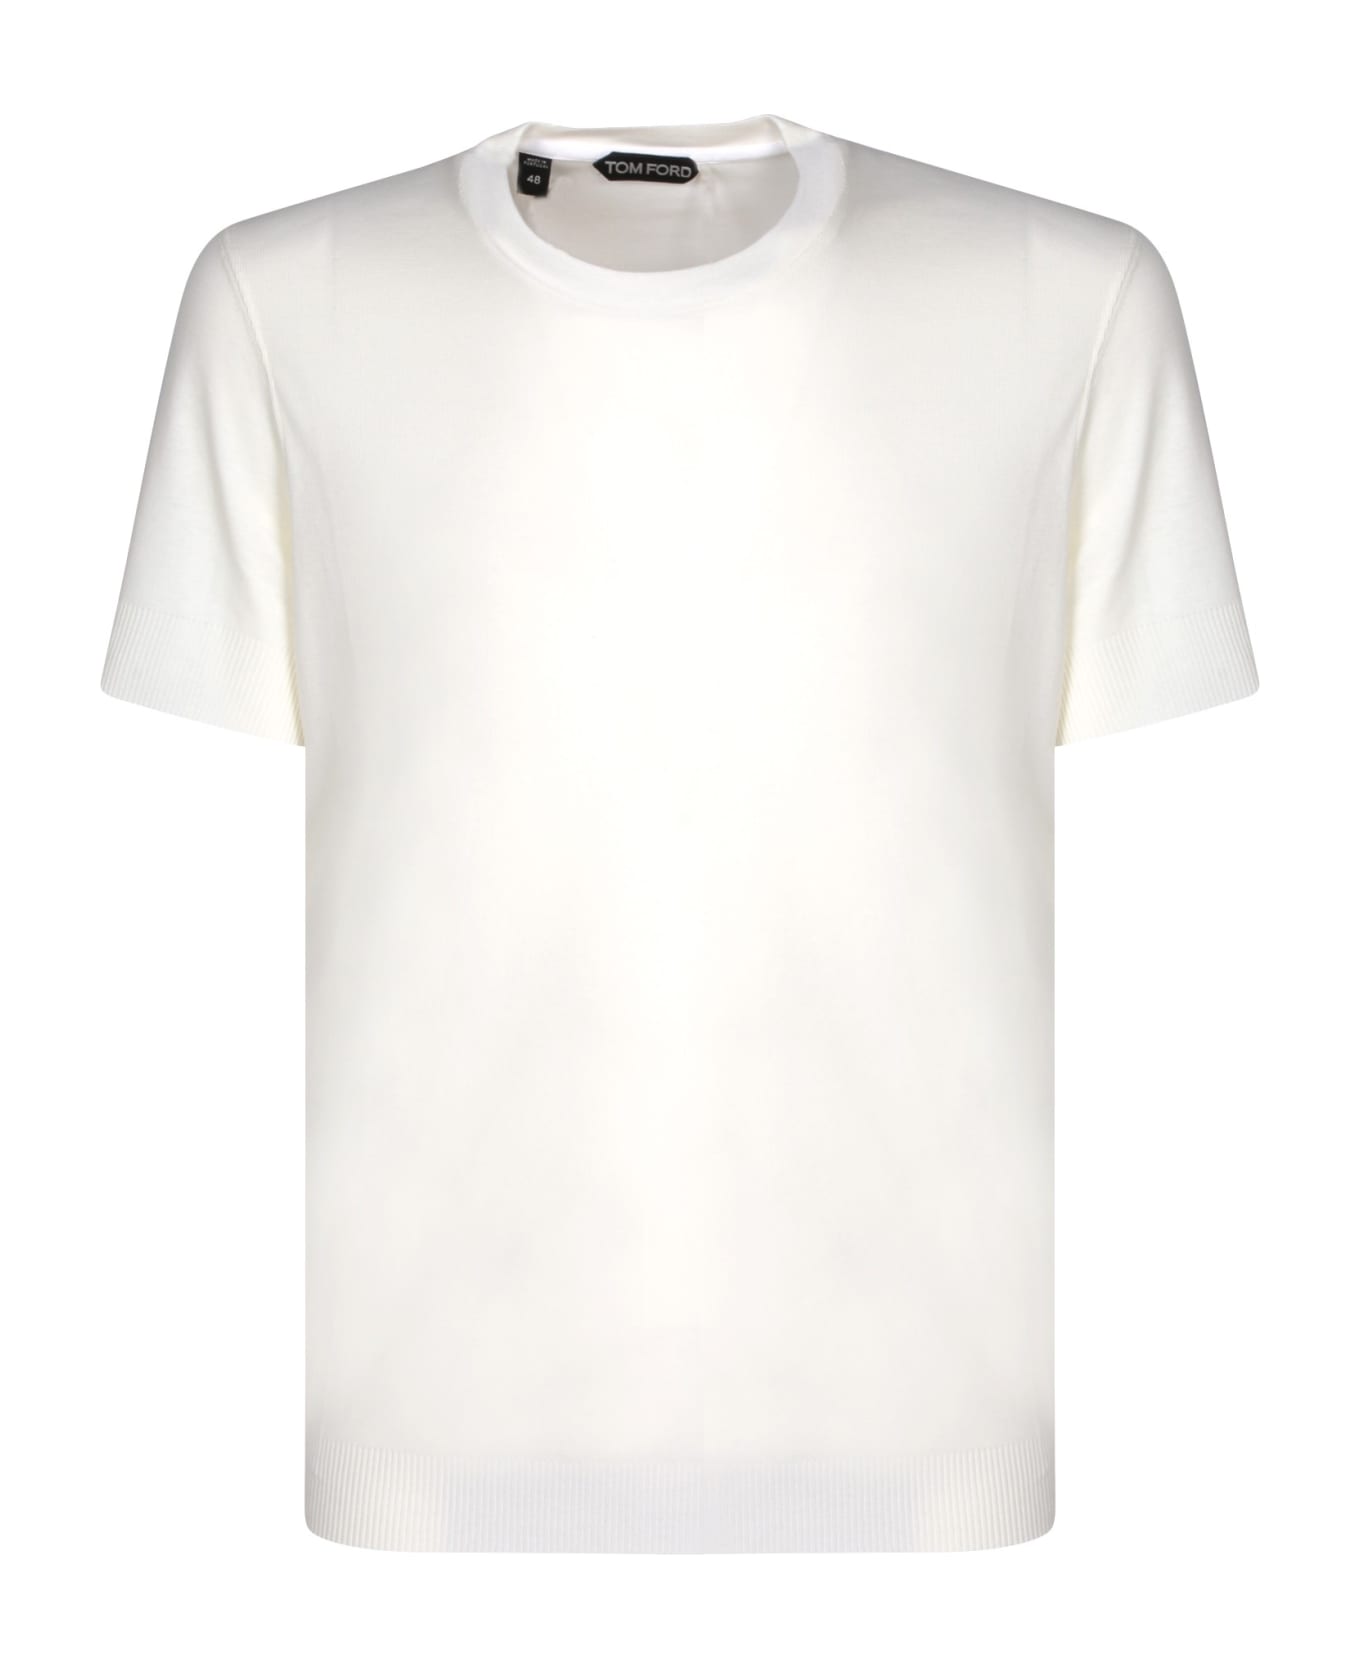 Tom Ford Ribber White T-shirt - White シャツ